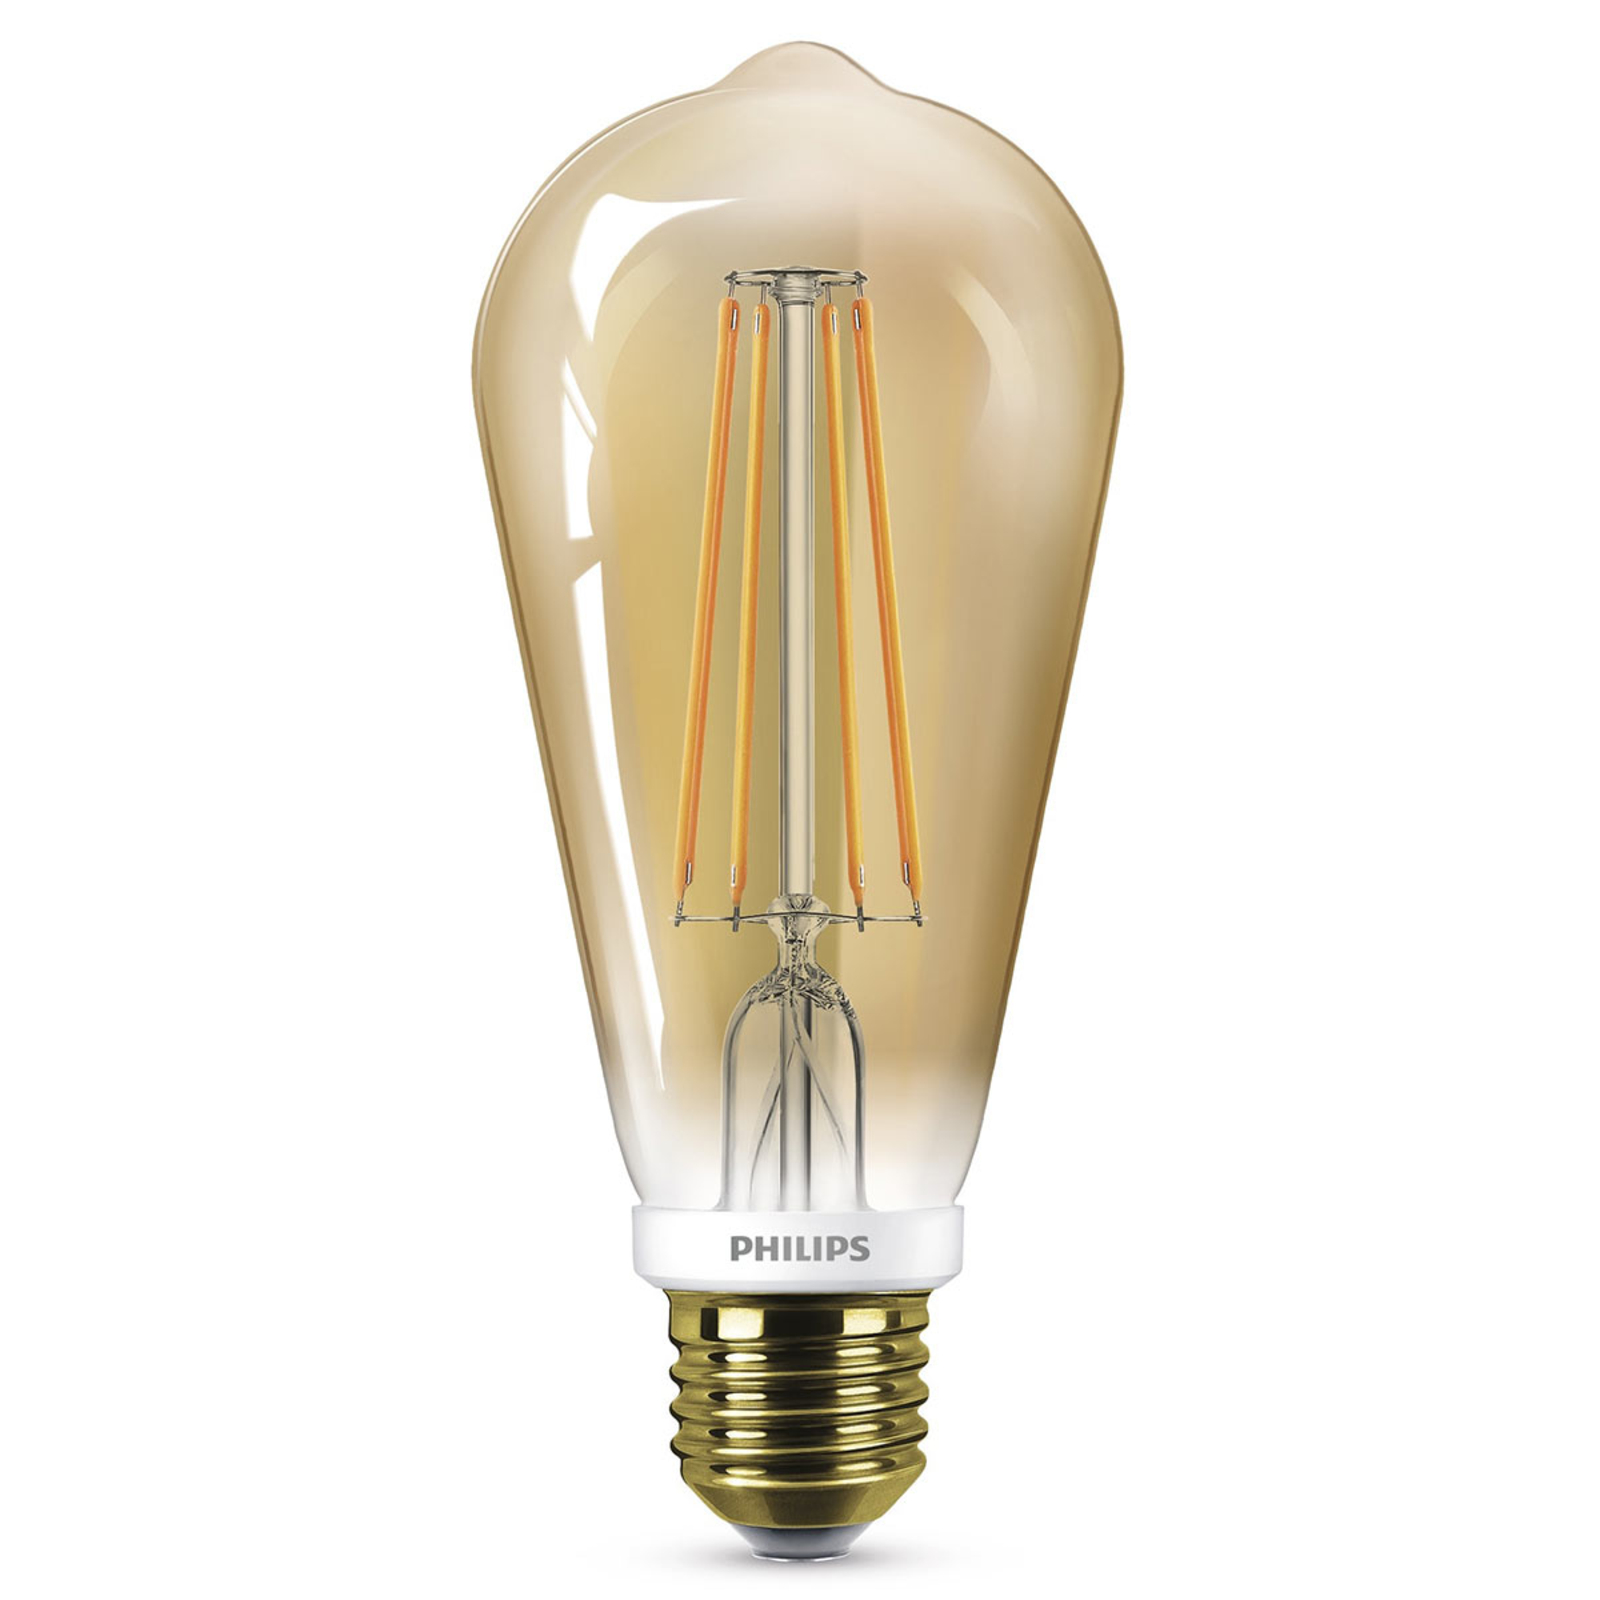 Dragende cirkel inflatie rechtdoor Philips LED lamp E27 ST64 5,5W goud, dimbaar | Lampen24.be